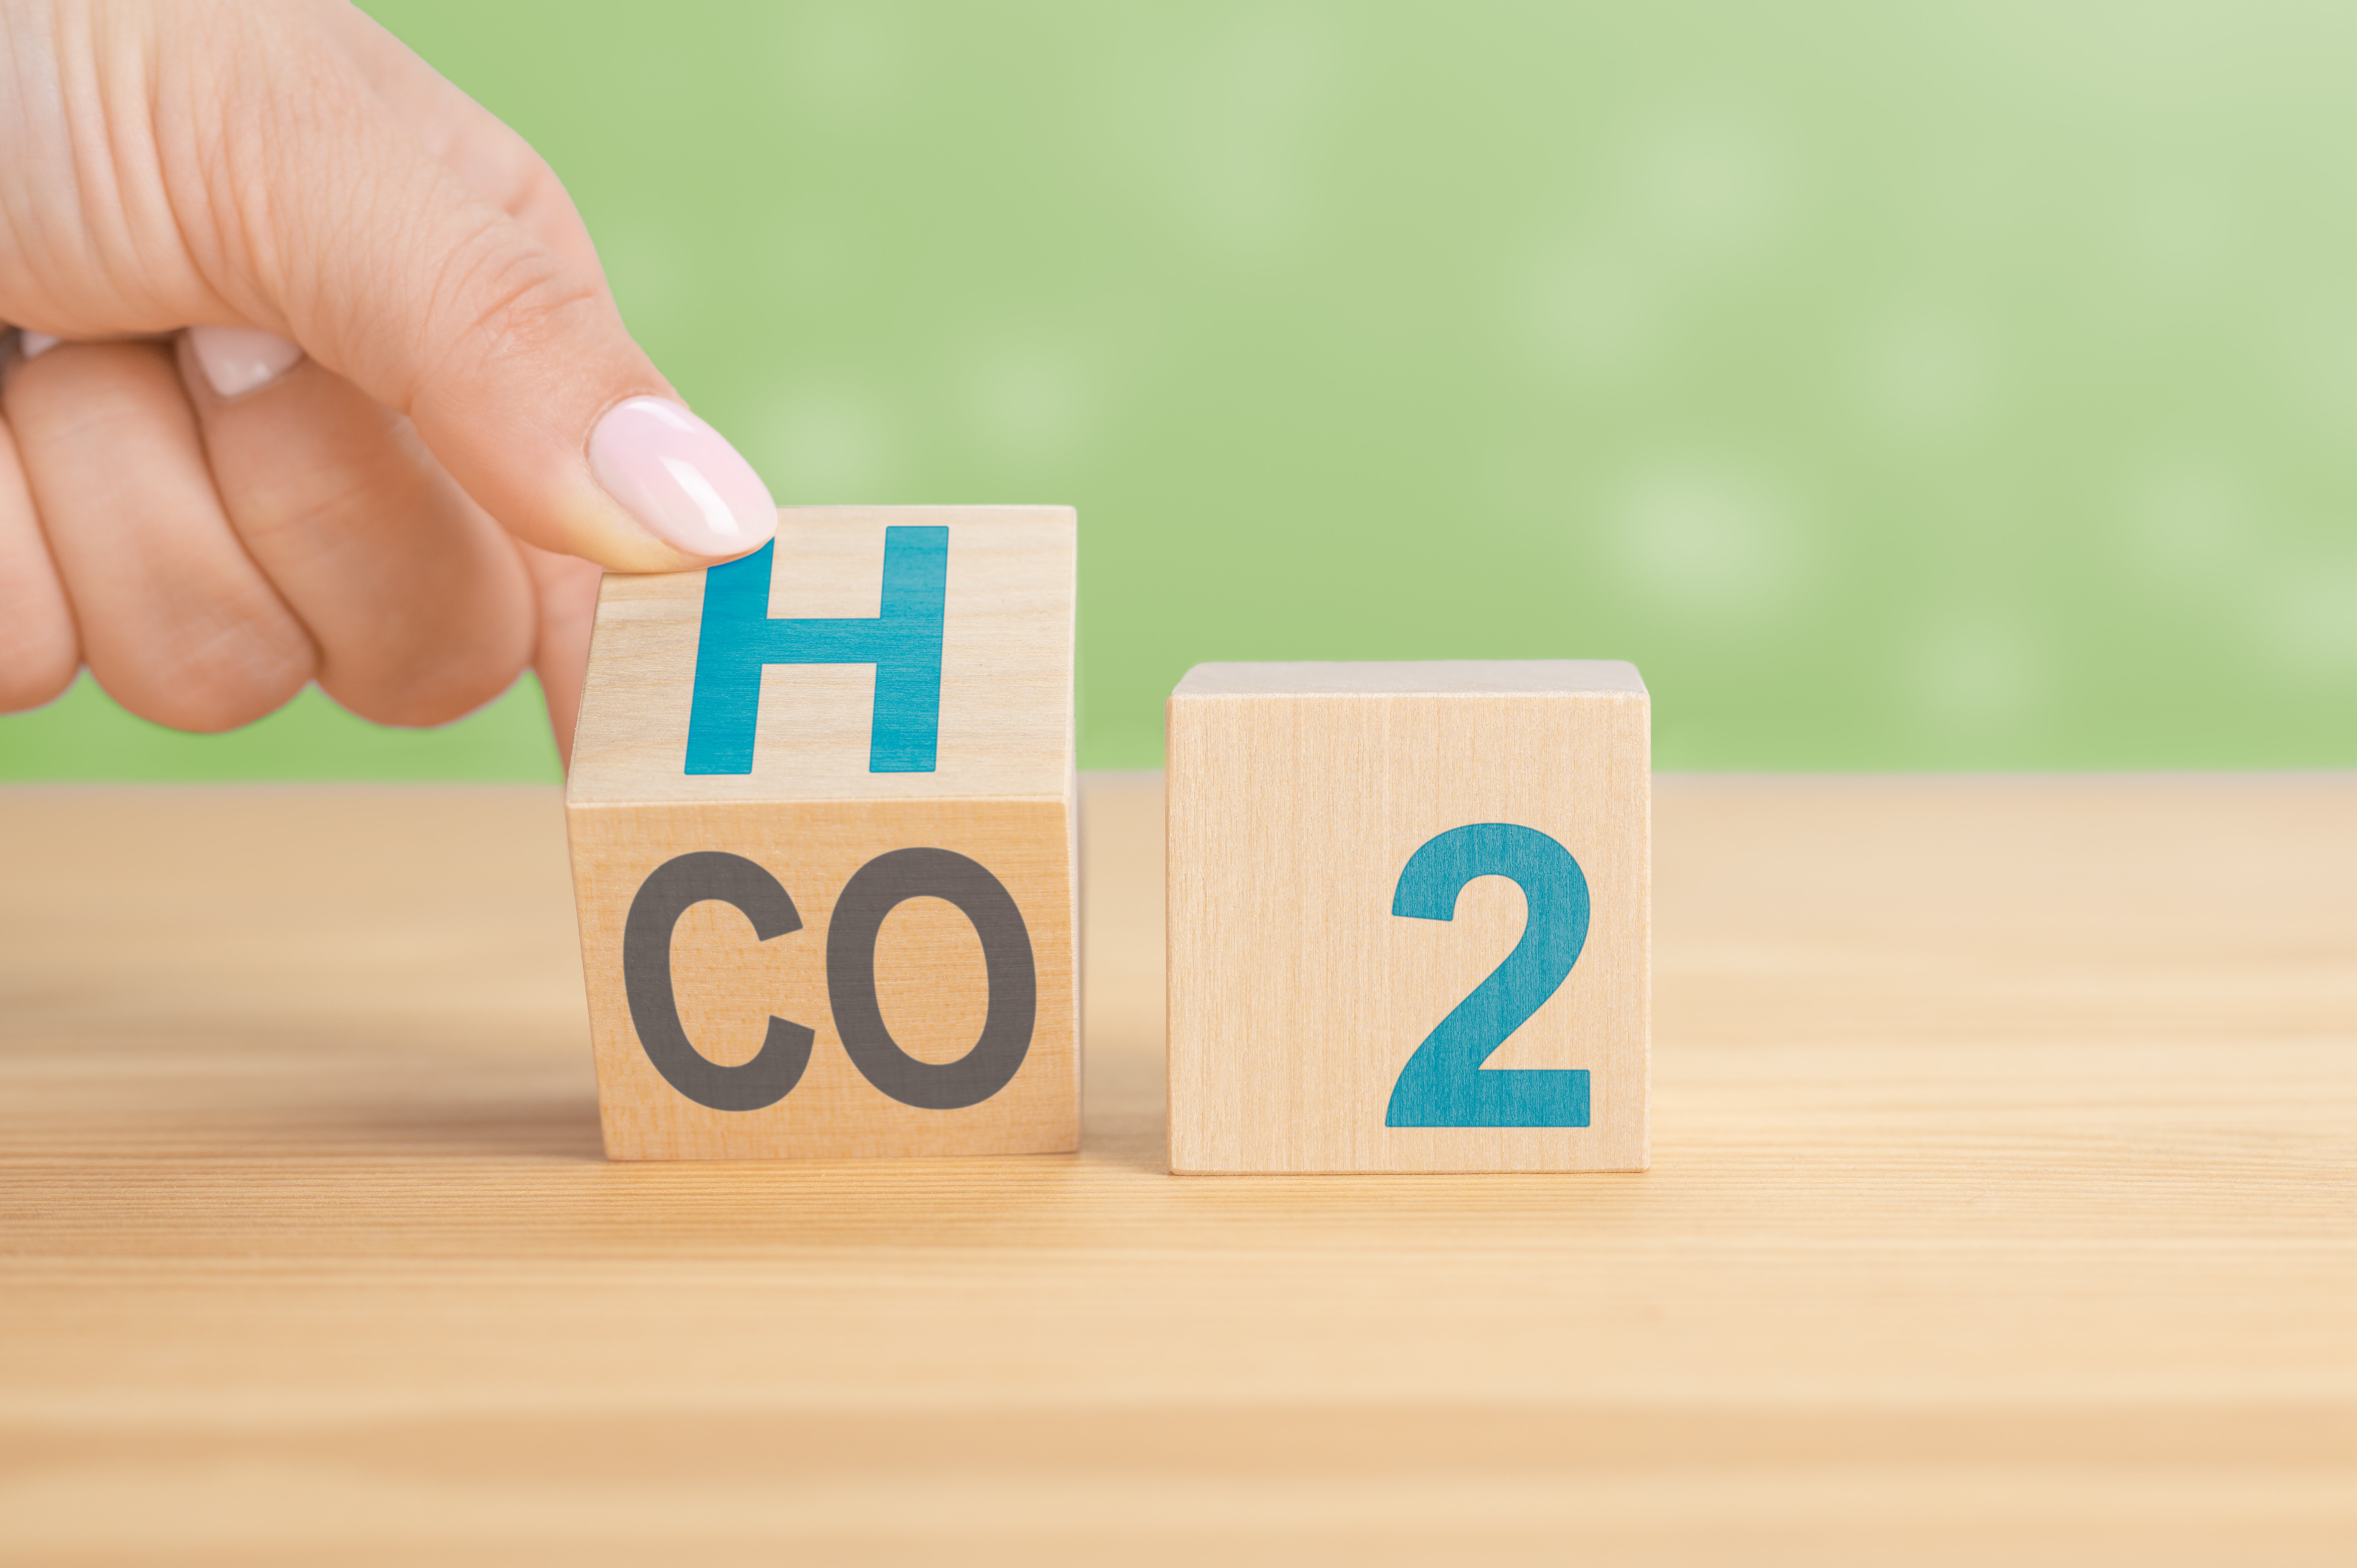 Certificações ameaçam fragmentar mercado de hidrogênio, alerta Irena. Na imagem: Mão vira um cubo e muda a expressão CO2 para H2 (Foto: Freepik)